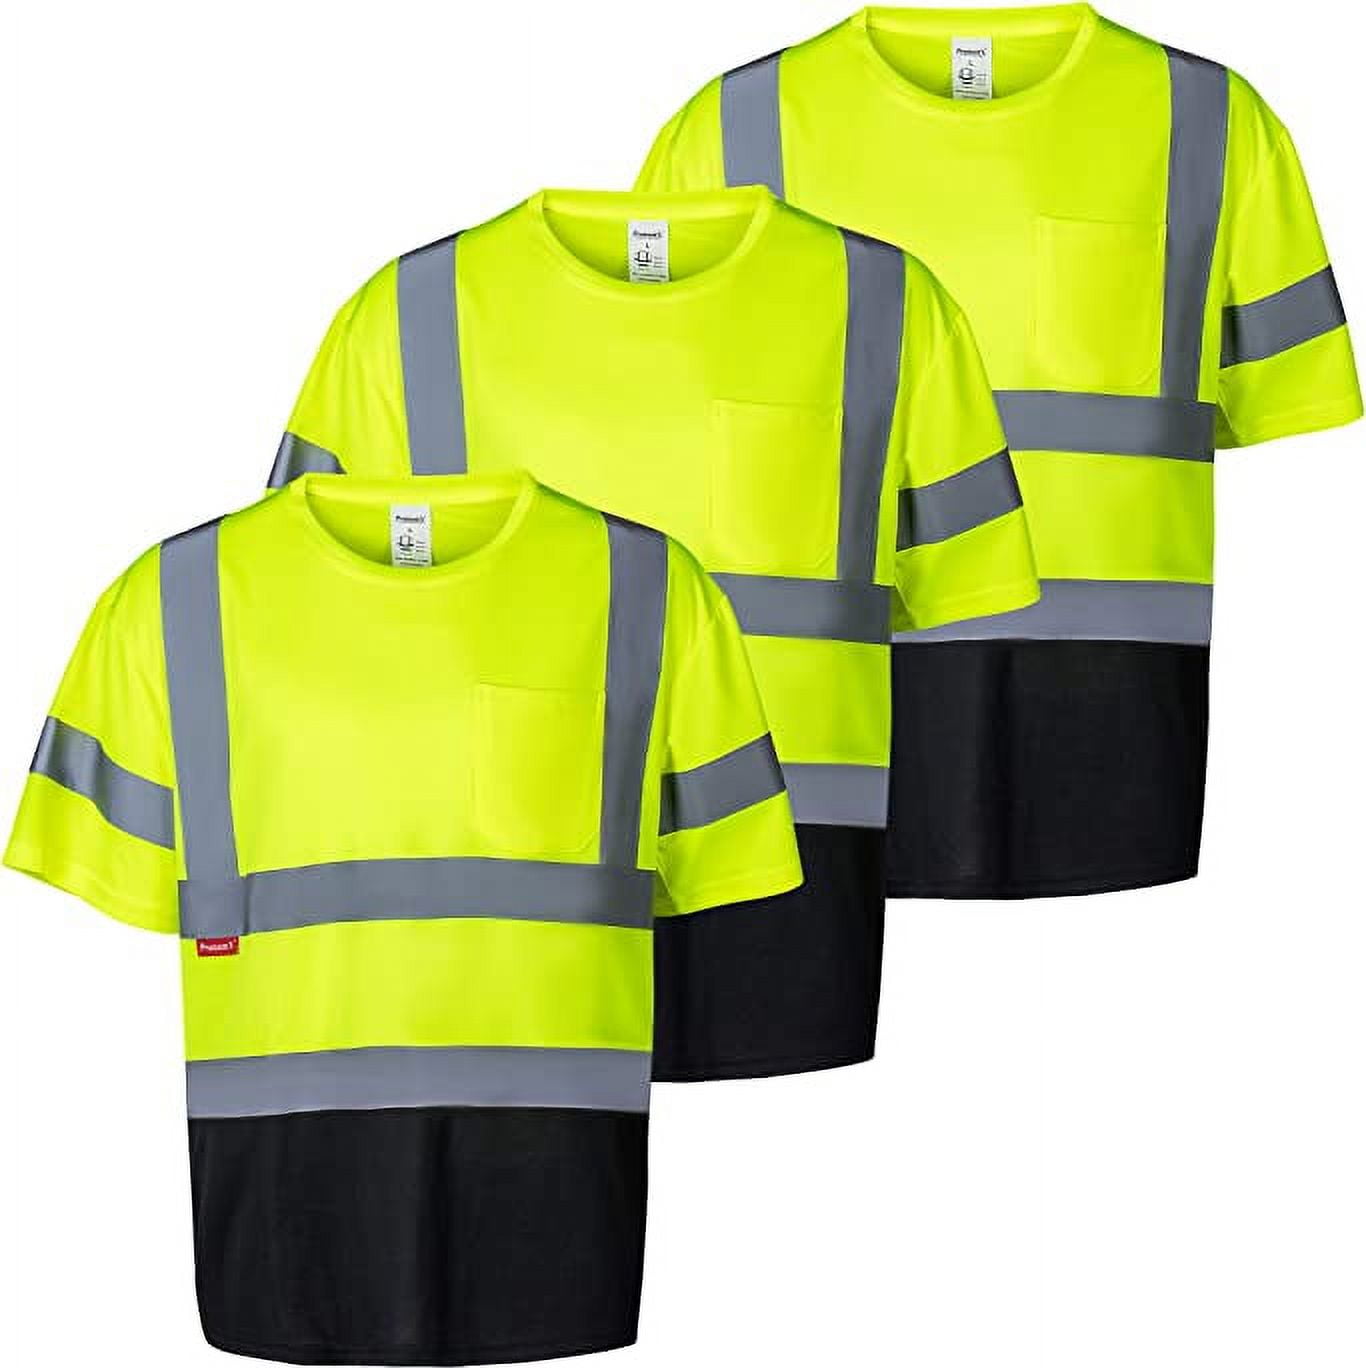 Radyan 14 Pack Long Sleeve (Ropa De Trabajo) Safety Green